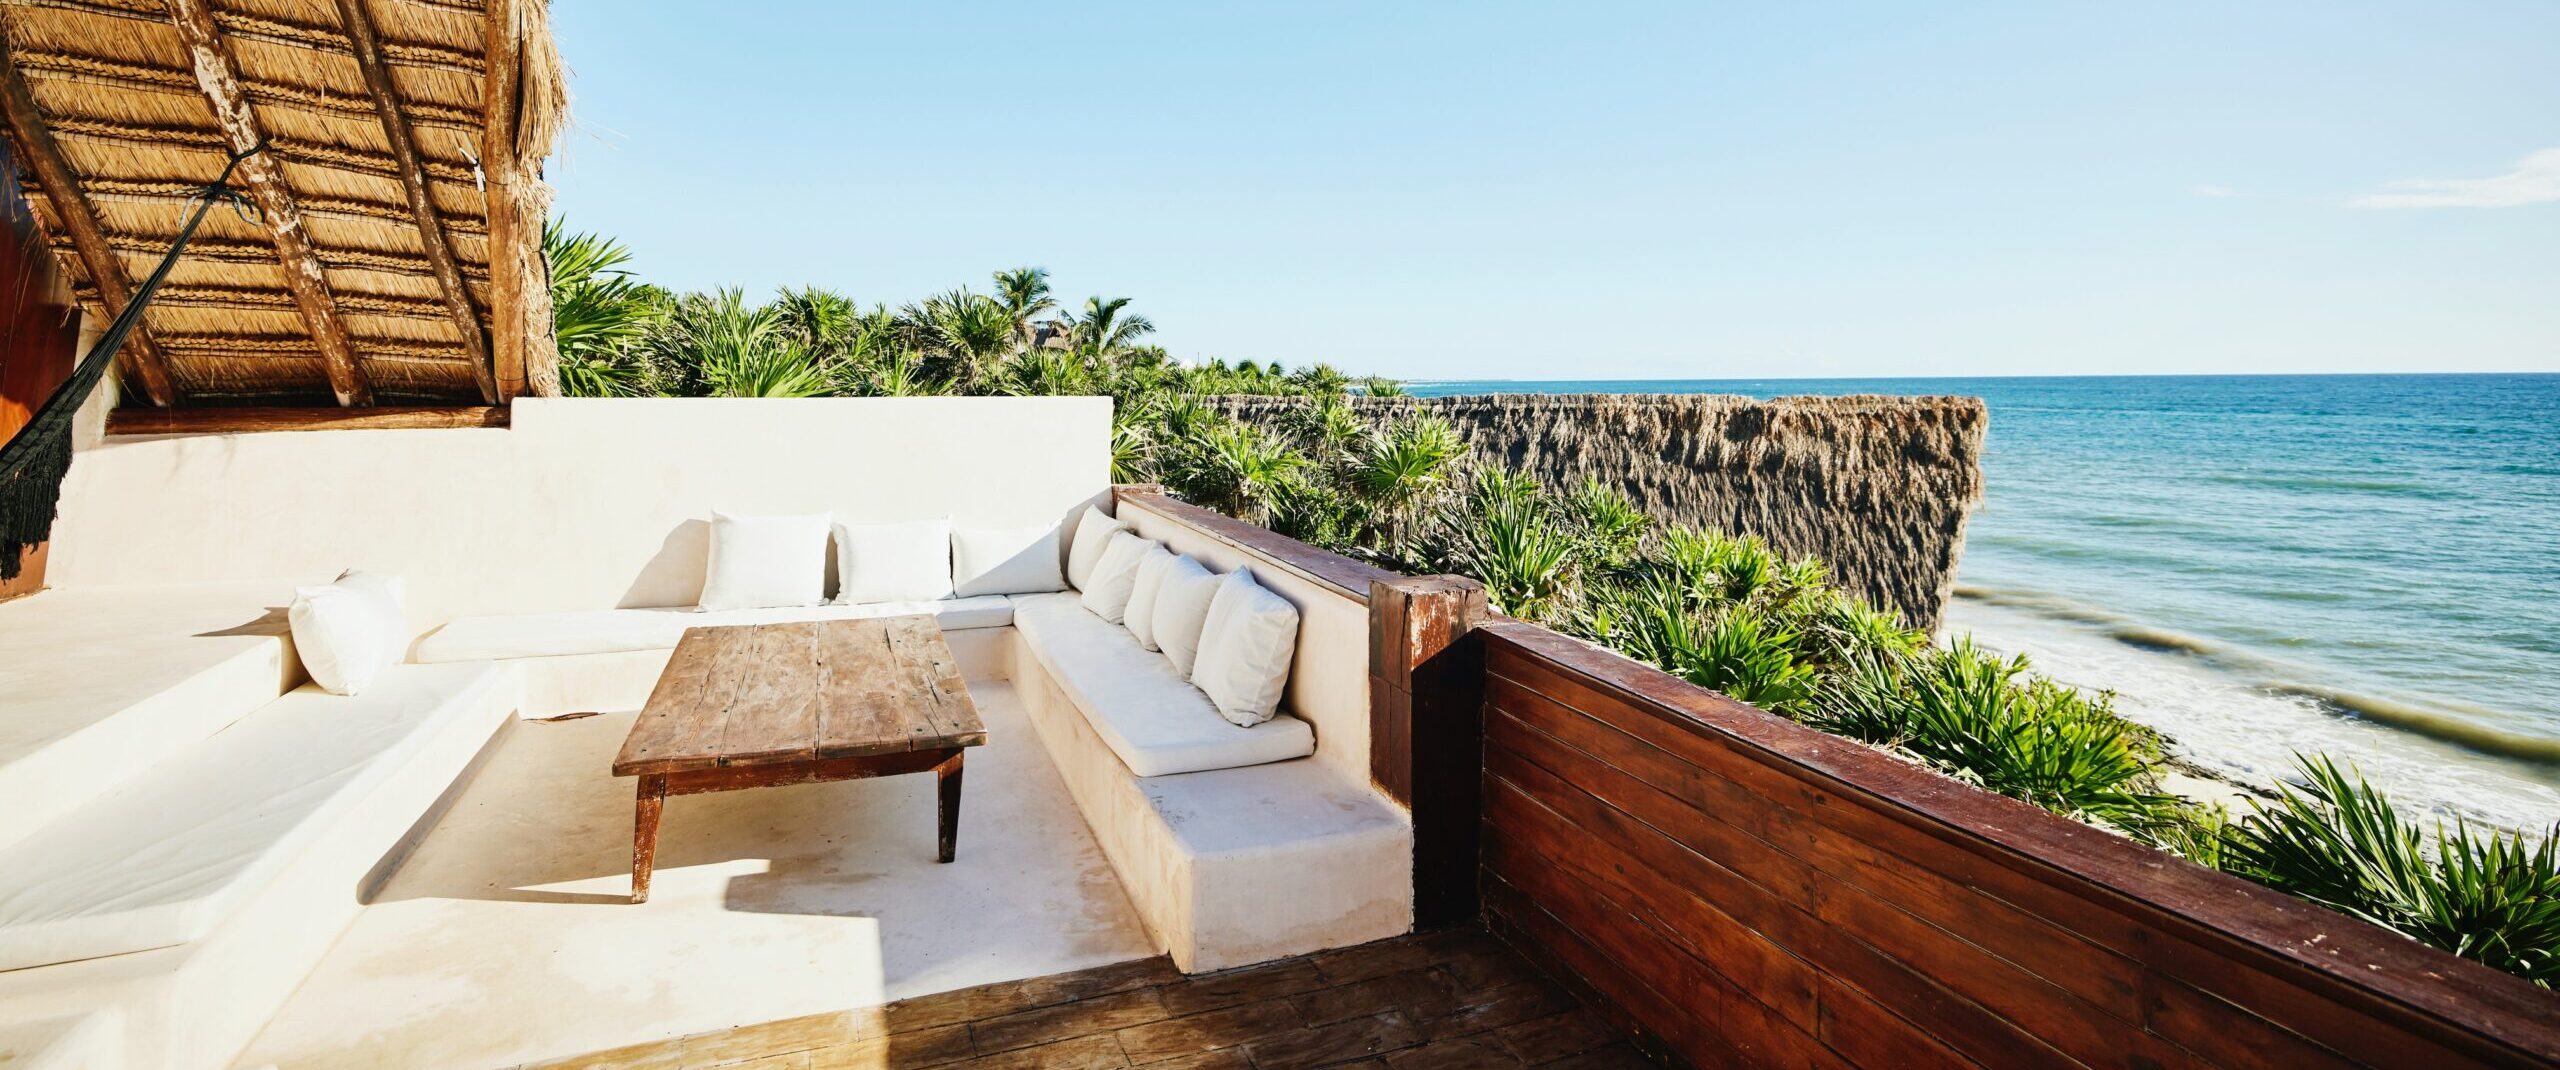 Toma amplia de la zona de asientos en la terraza de una suite de lujo en un complejo turístico tropical